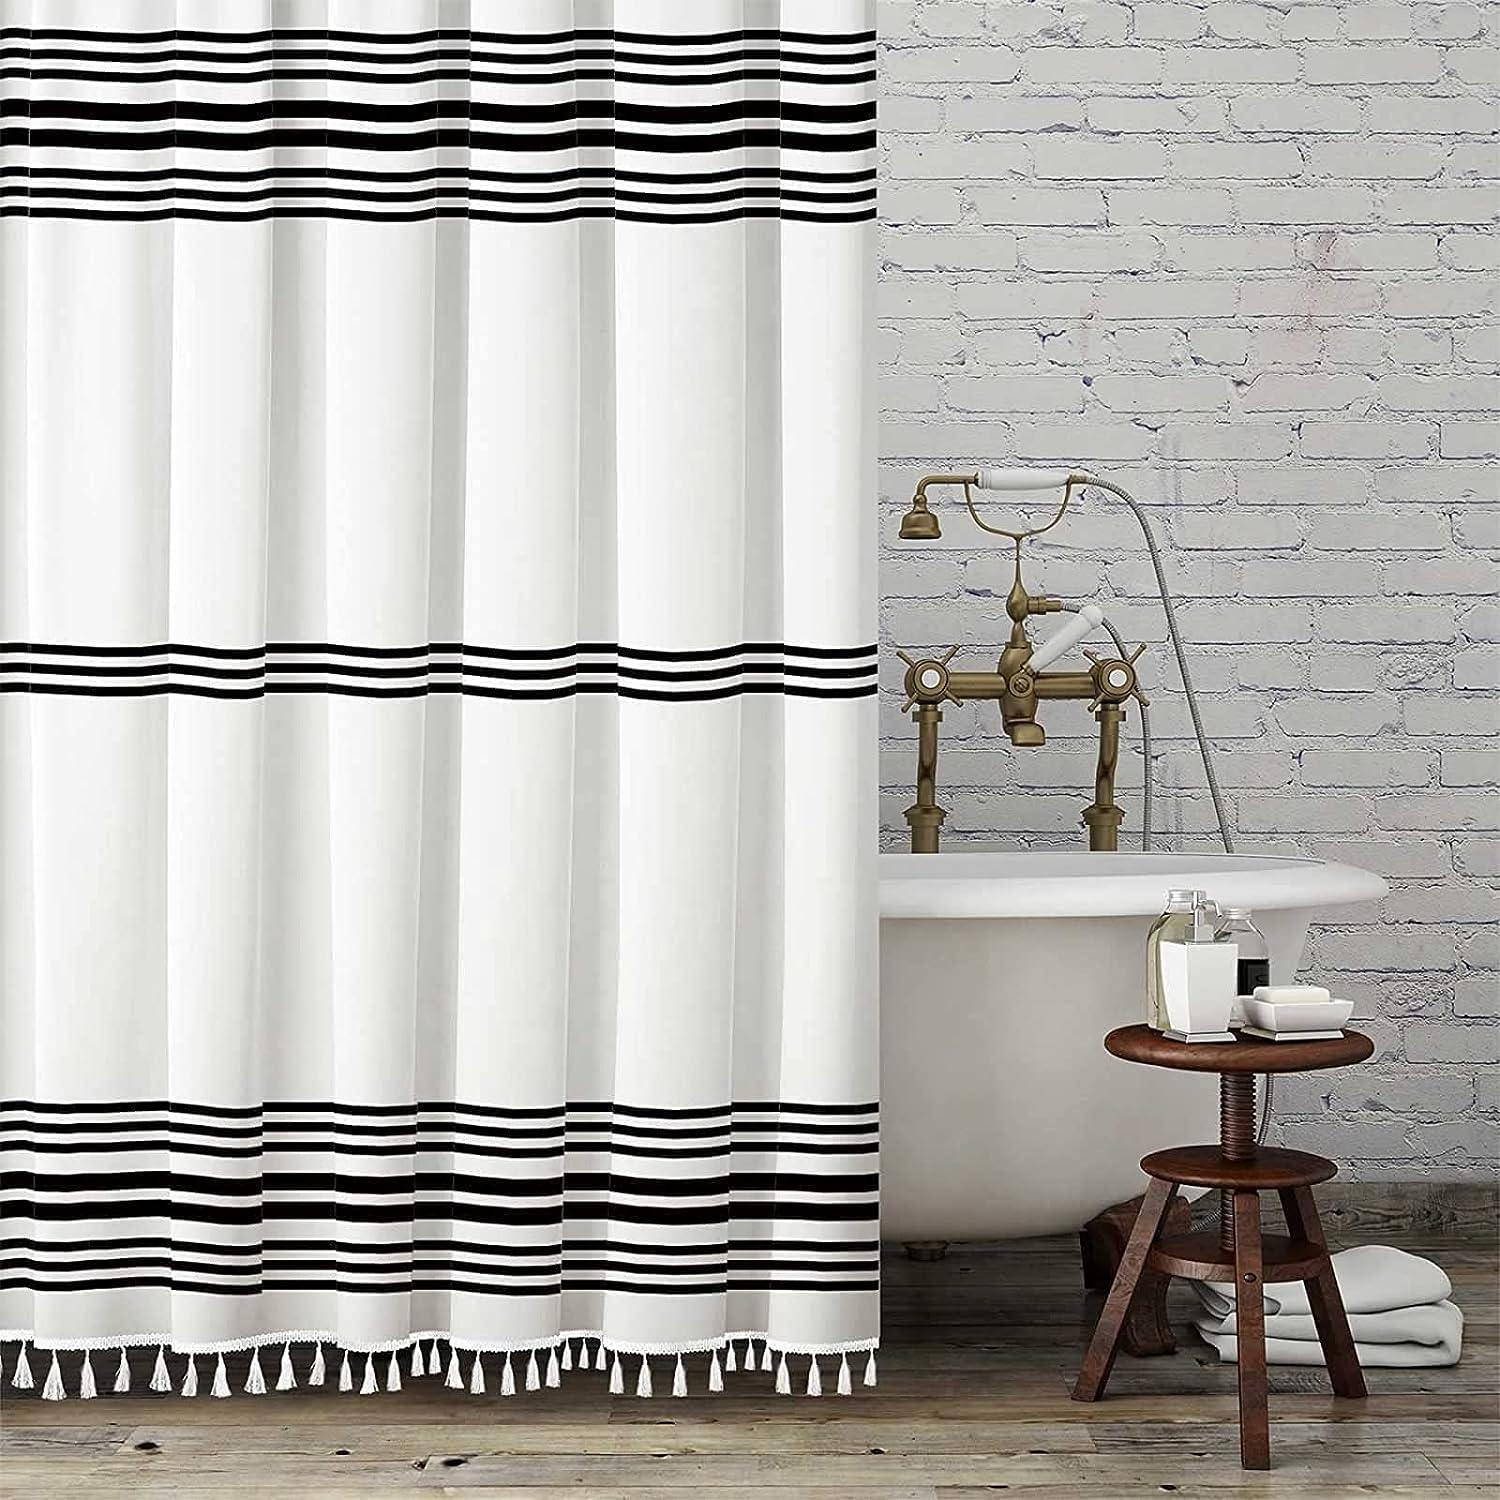 Cortina de ducha geométrica blanca, cortina de ducha de moda en puntos  blancos y negros, cortinas de ducha de tela impermeable para baño con 72x72  pulgadas.